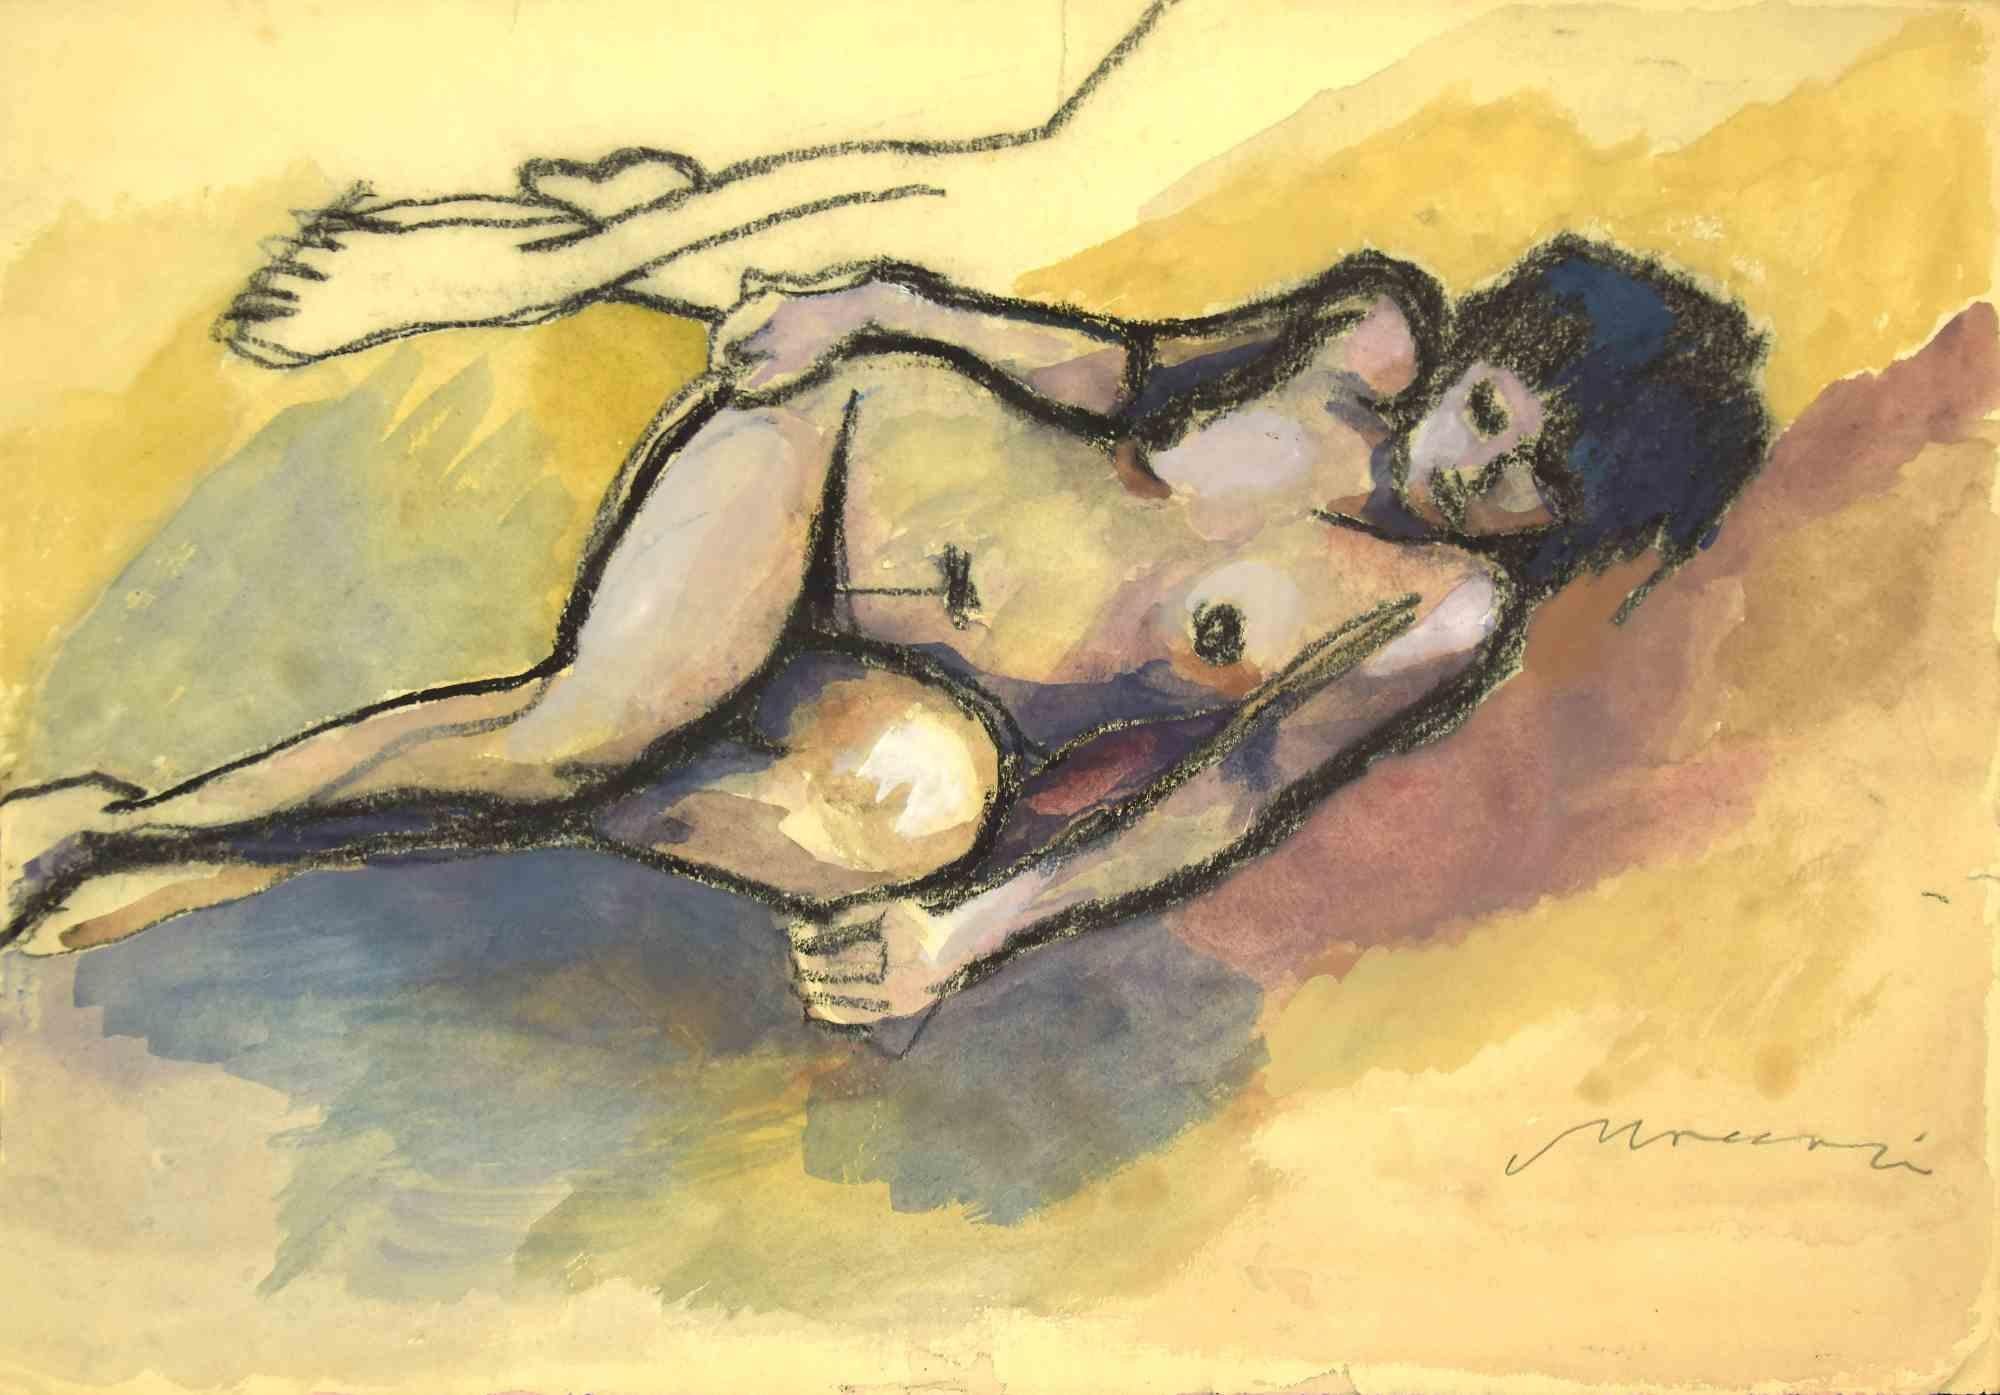 Nude - Drawing by Mino Maccari - 1930s